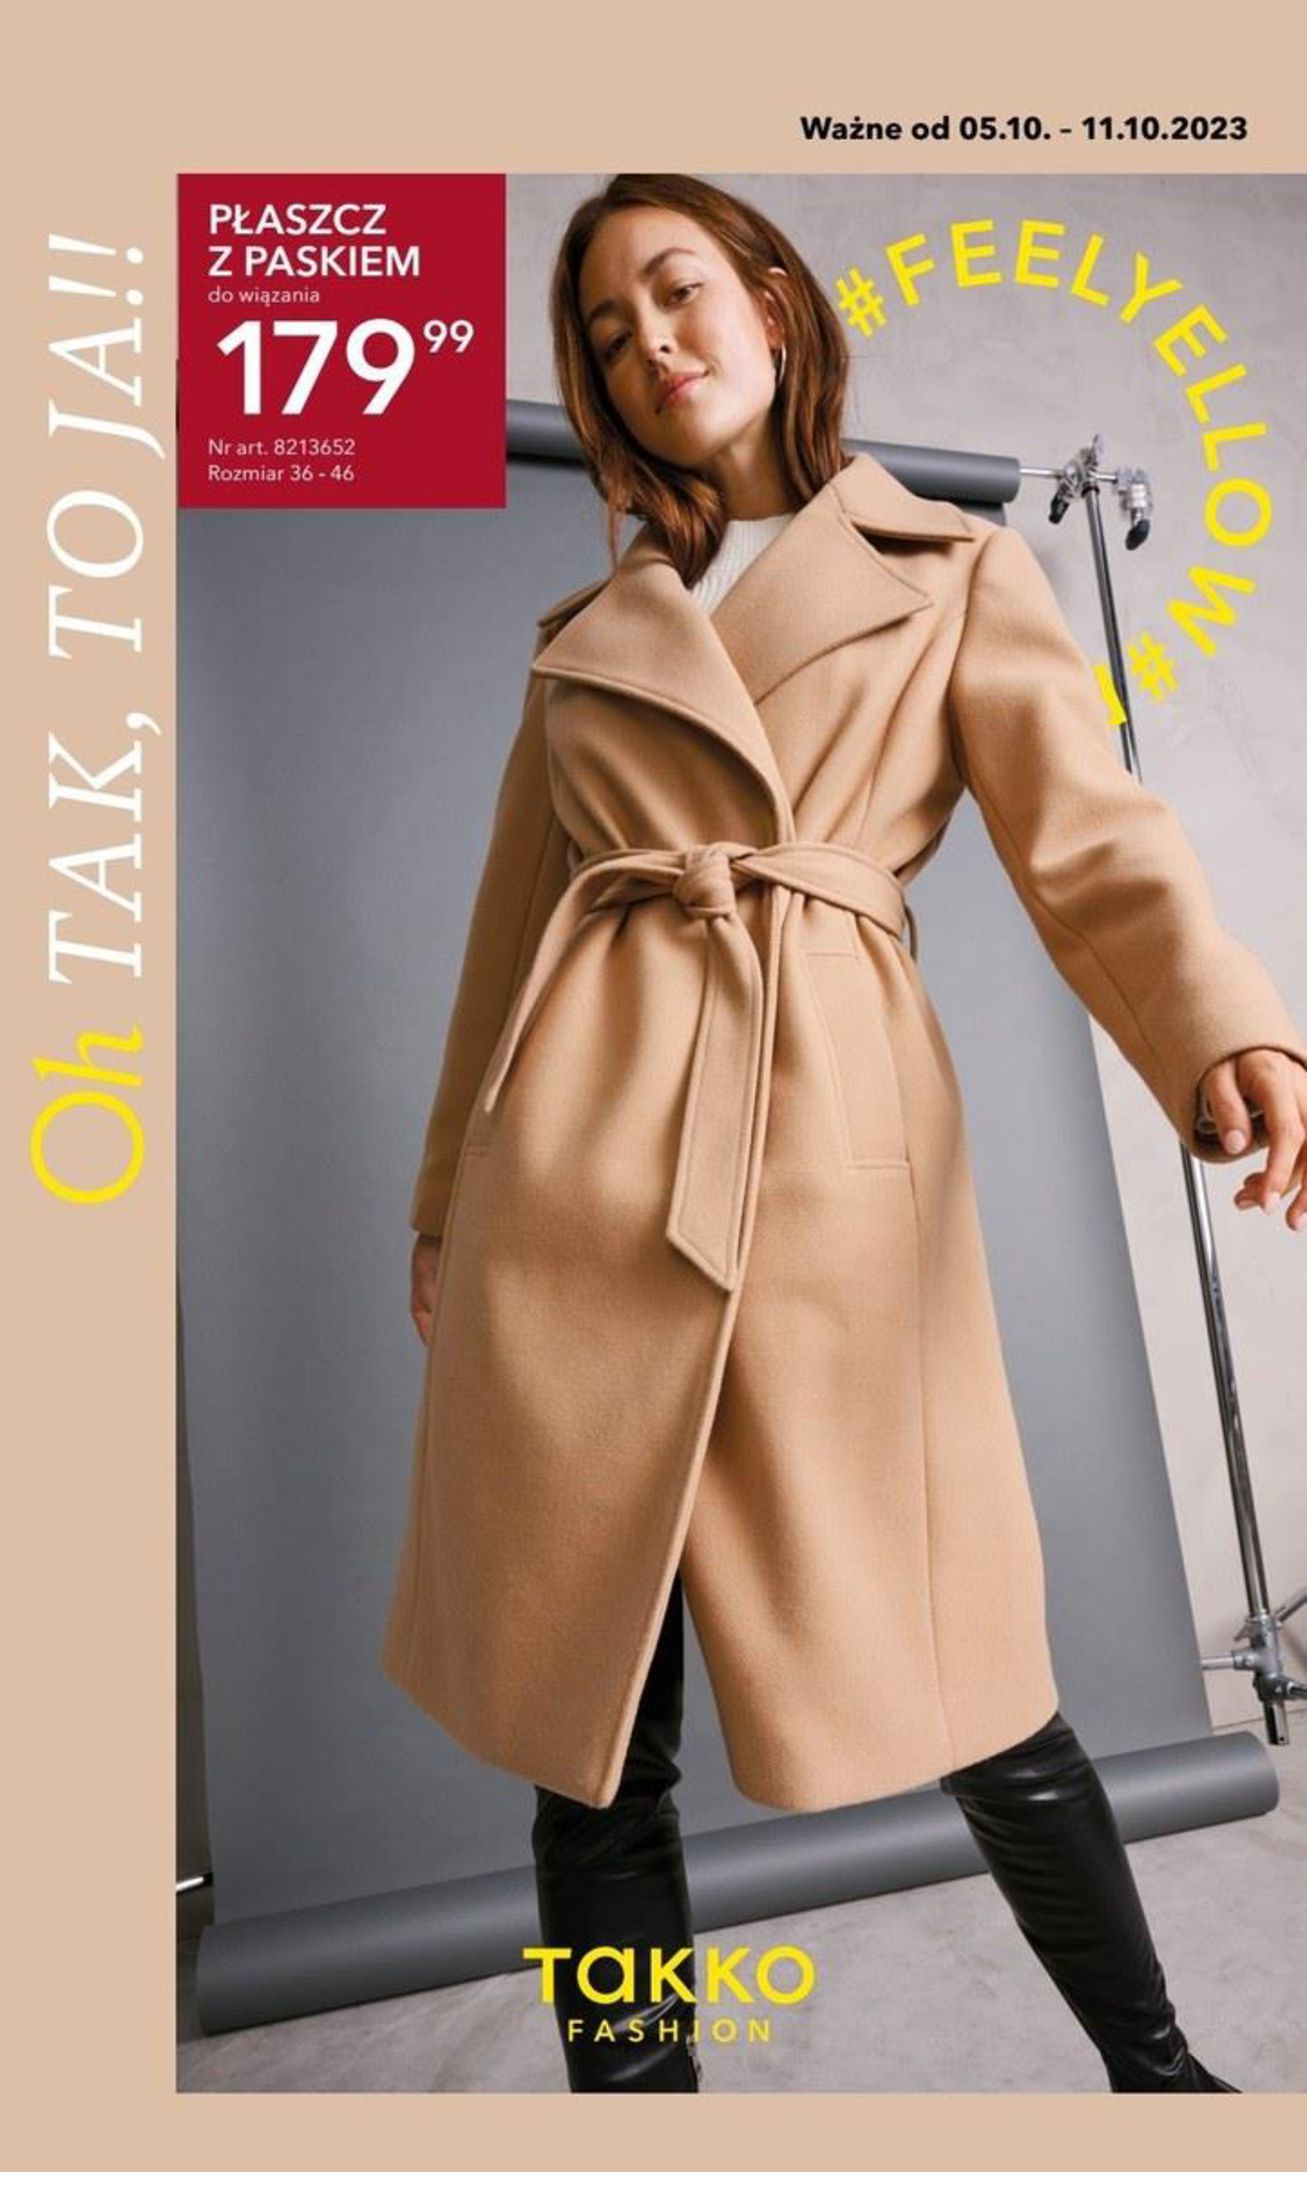 Takko Fashion:  Gazetka Takko Fashion 04.10.2023